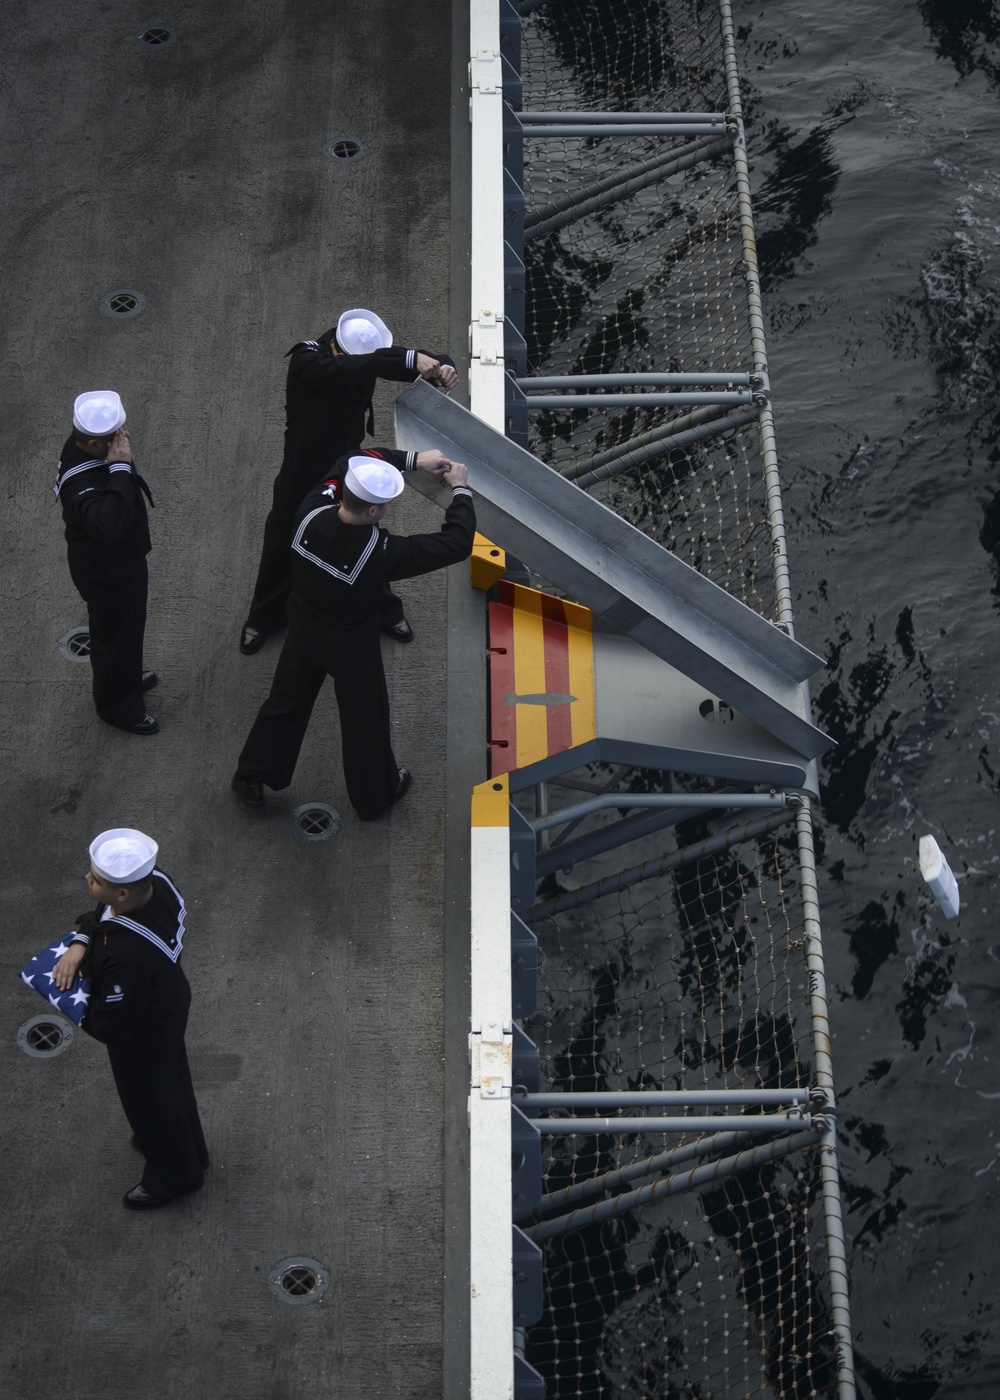 Nimitz Conducts Burial At Sea